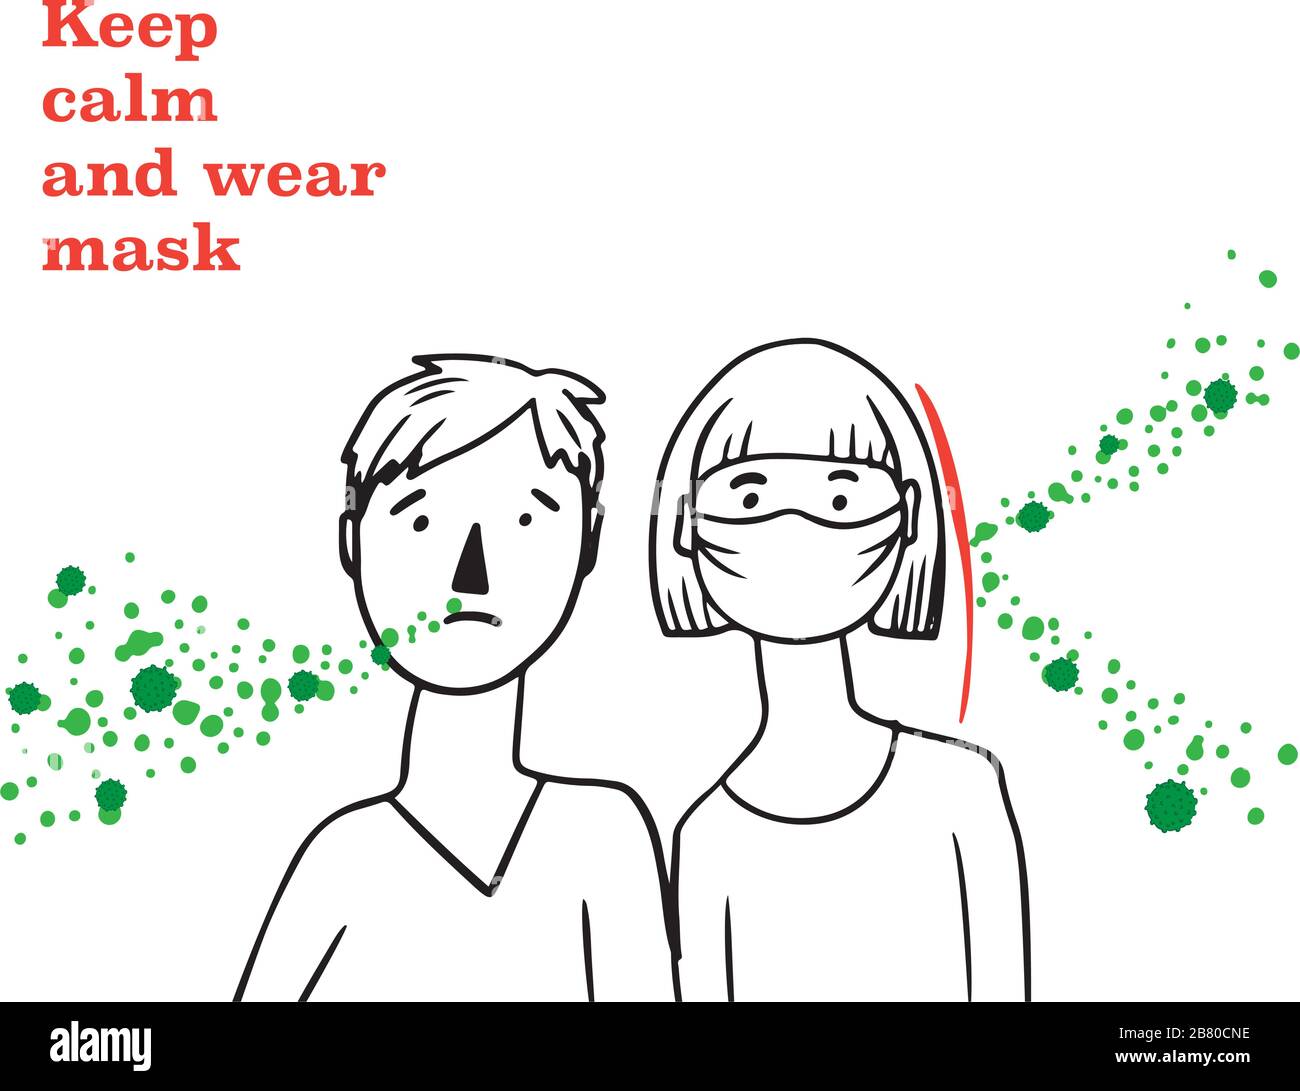 Segno mantenere la calma e indossare maschera attenzione coronavirus 2019-nC0V focolaio. Interrompere la pandemia del microbo COVID-19. Il virus attacca le vie respiratorie, infezioni medico rischio per la salute. Stile cartoon piatto Illustrazione Vettoriale